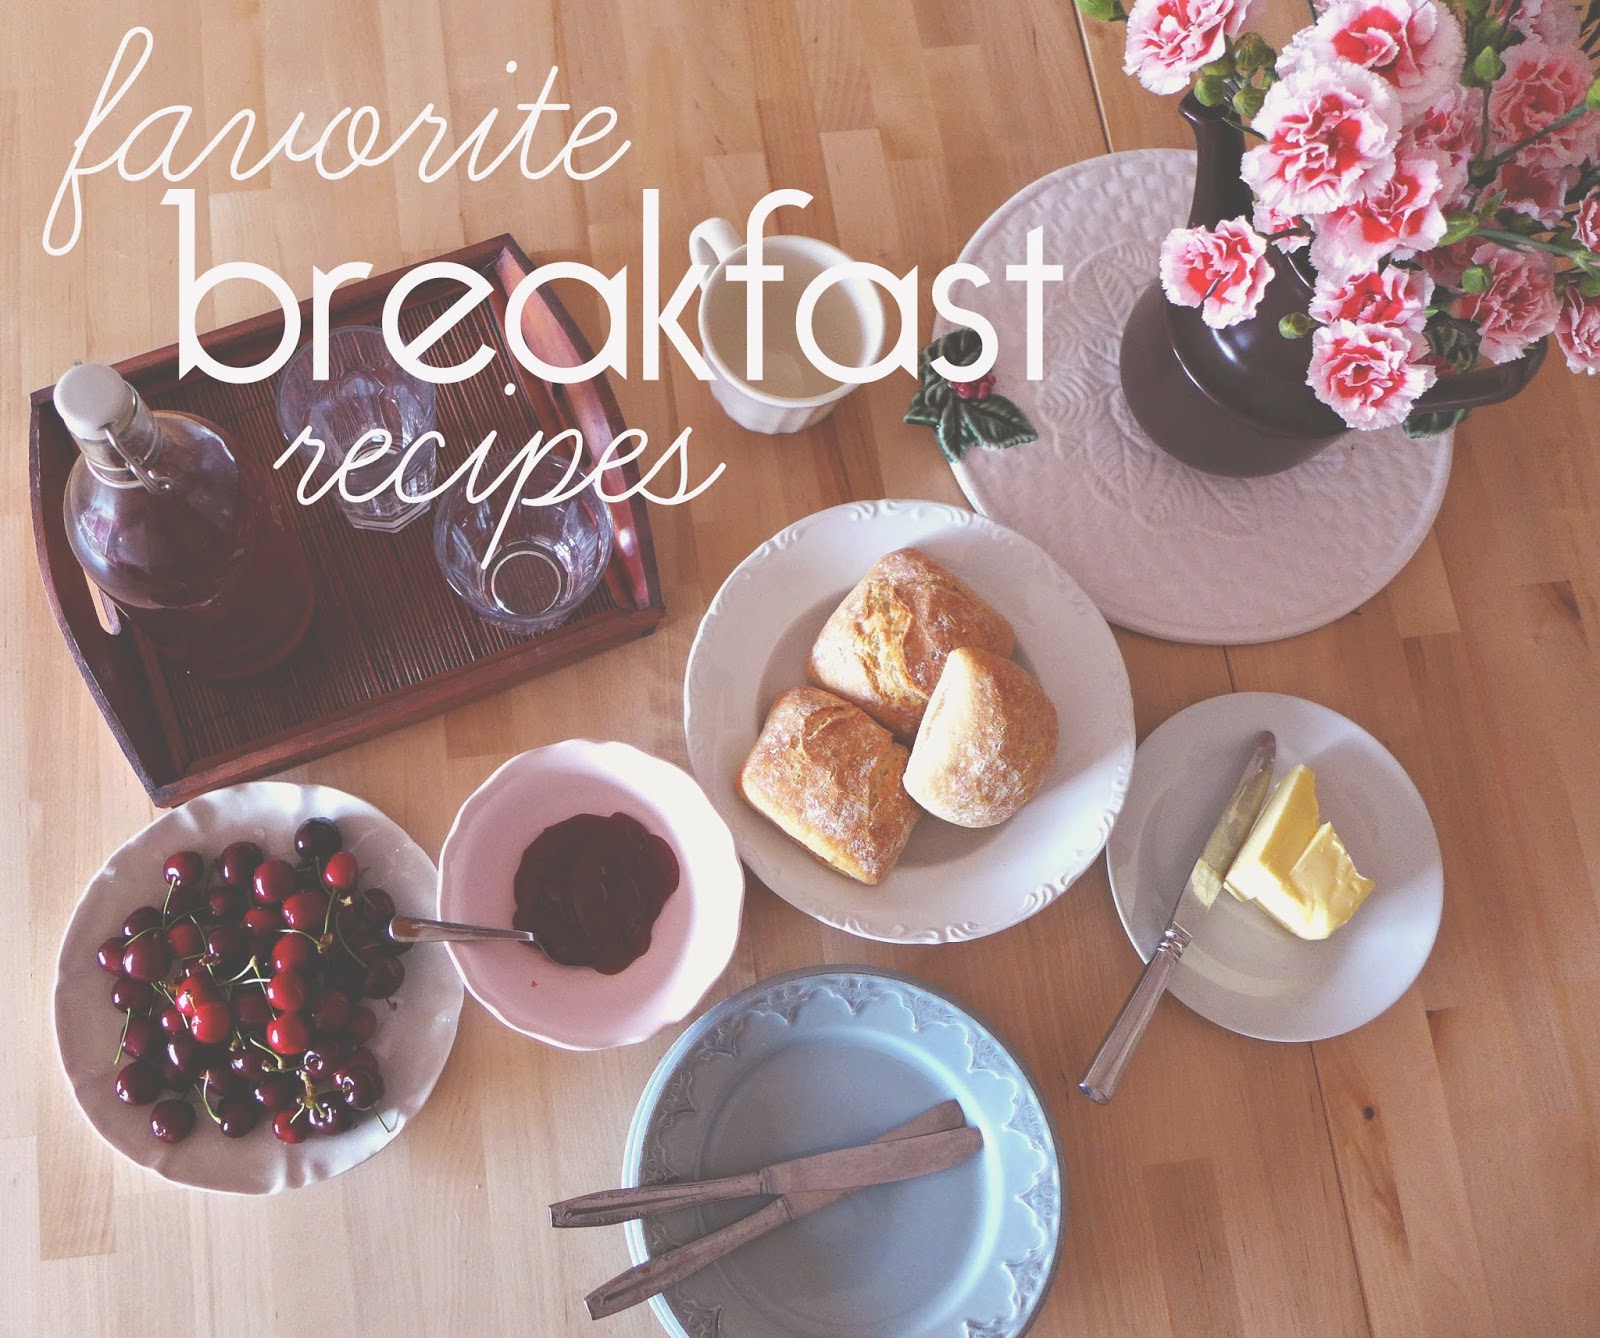 Receitas para um bom pequeno-almoço/ Favorite breakfas recipes